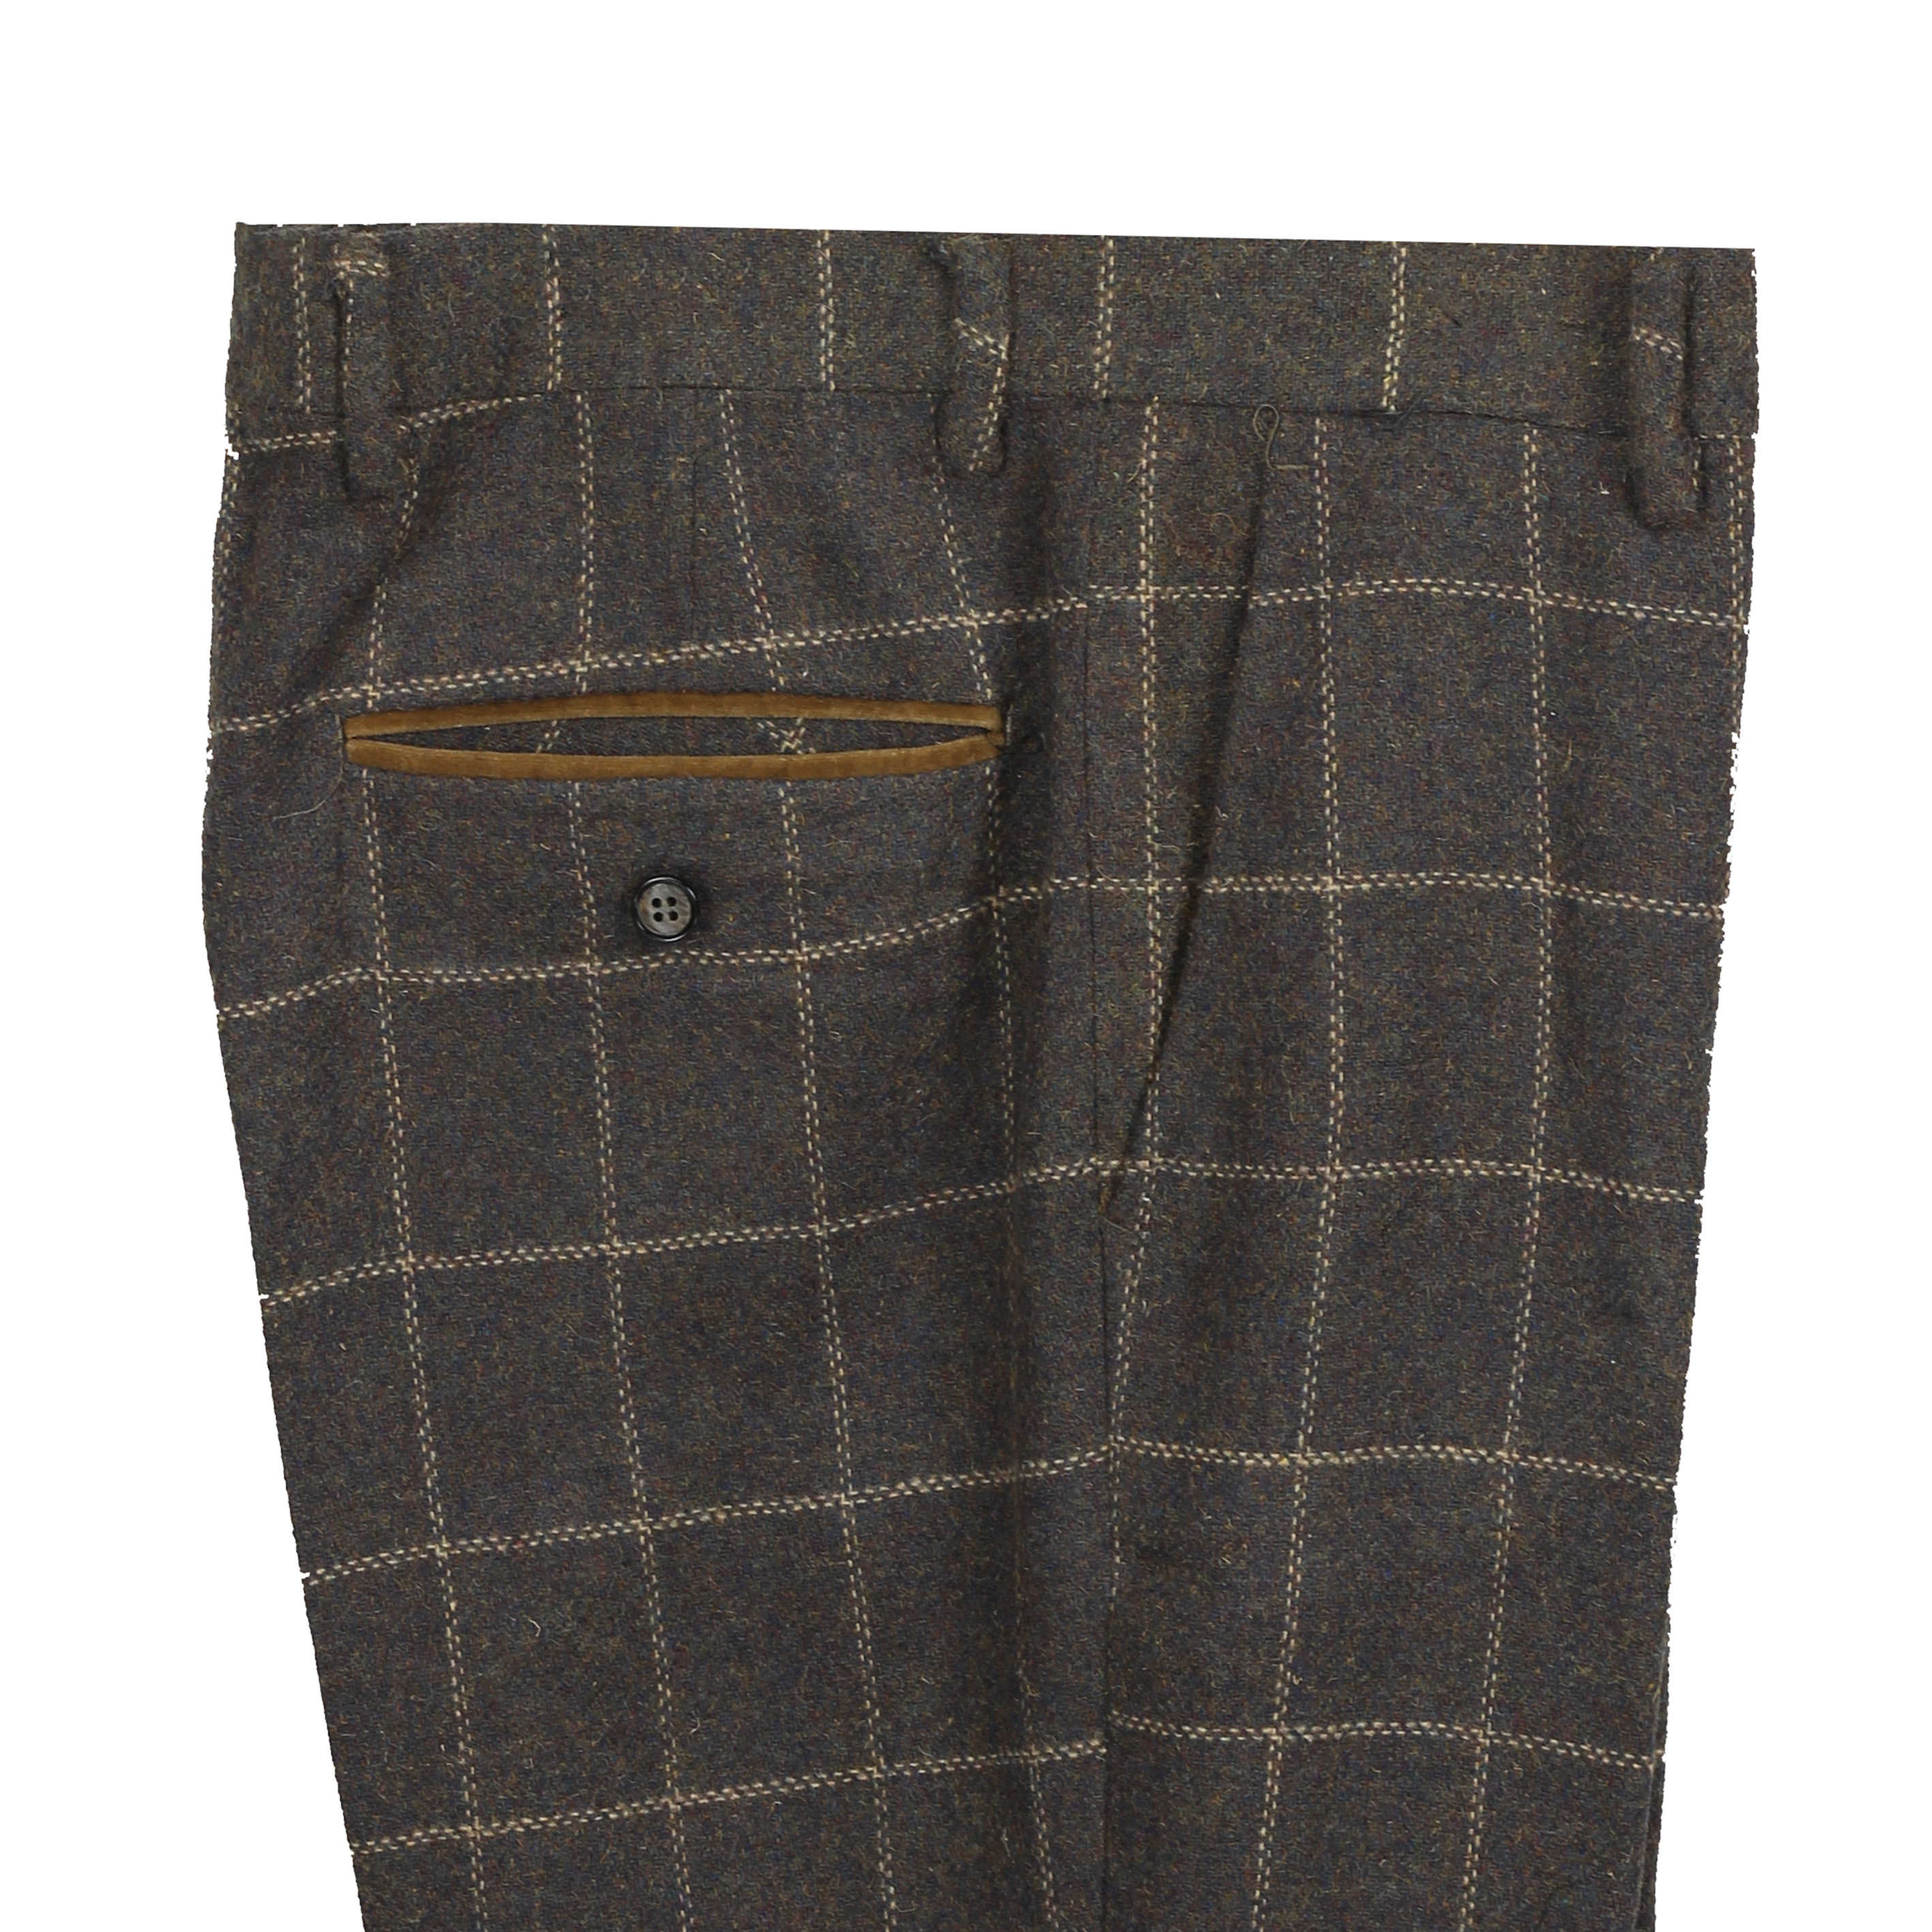 Mens Tweed Herringbone Check Trousers Vintage Tailored Fit Formal Suit Pants